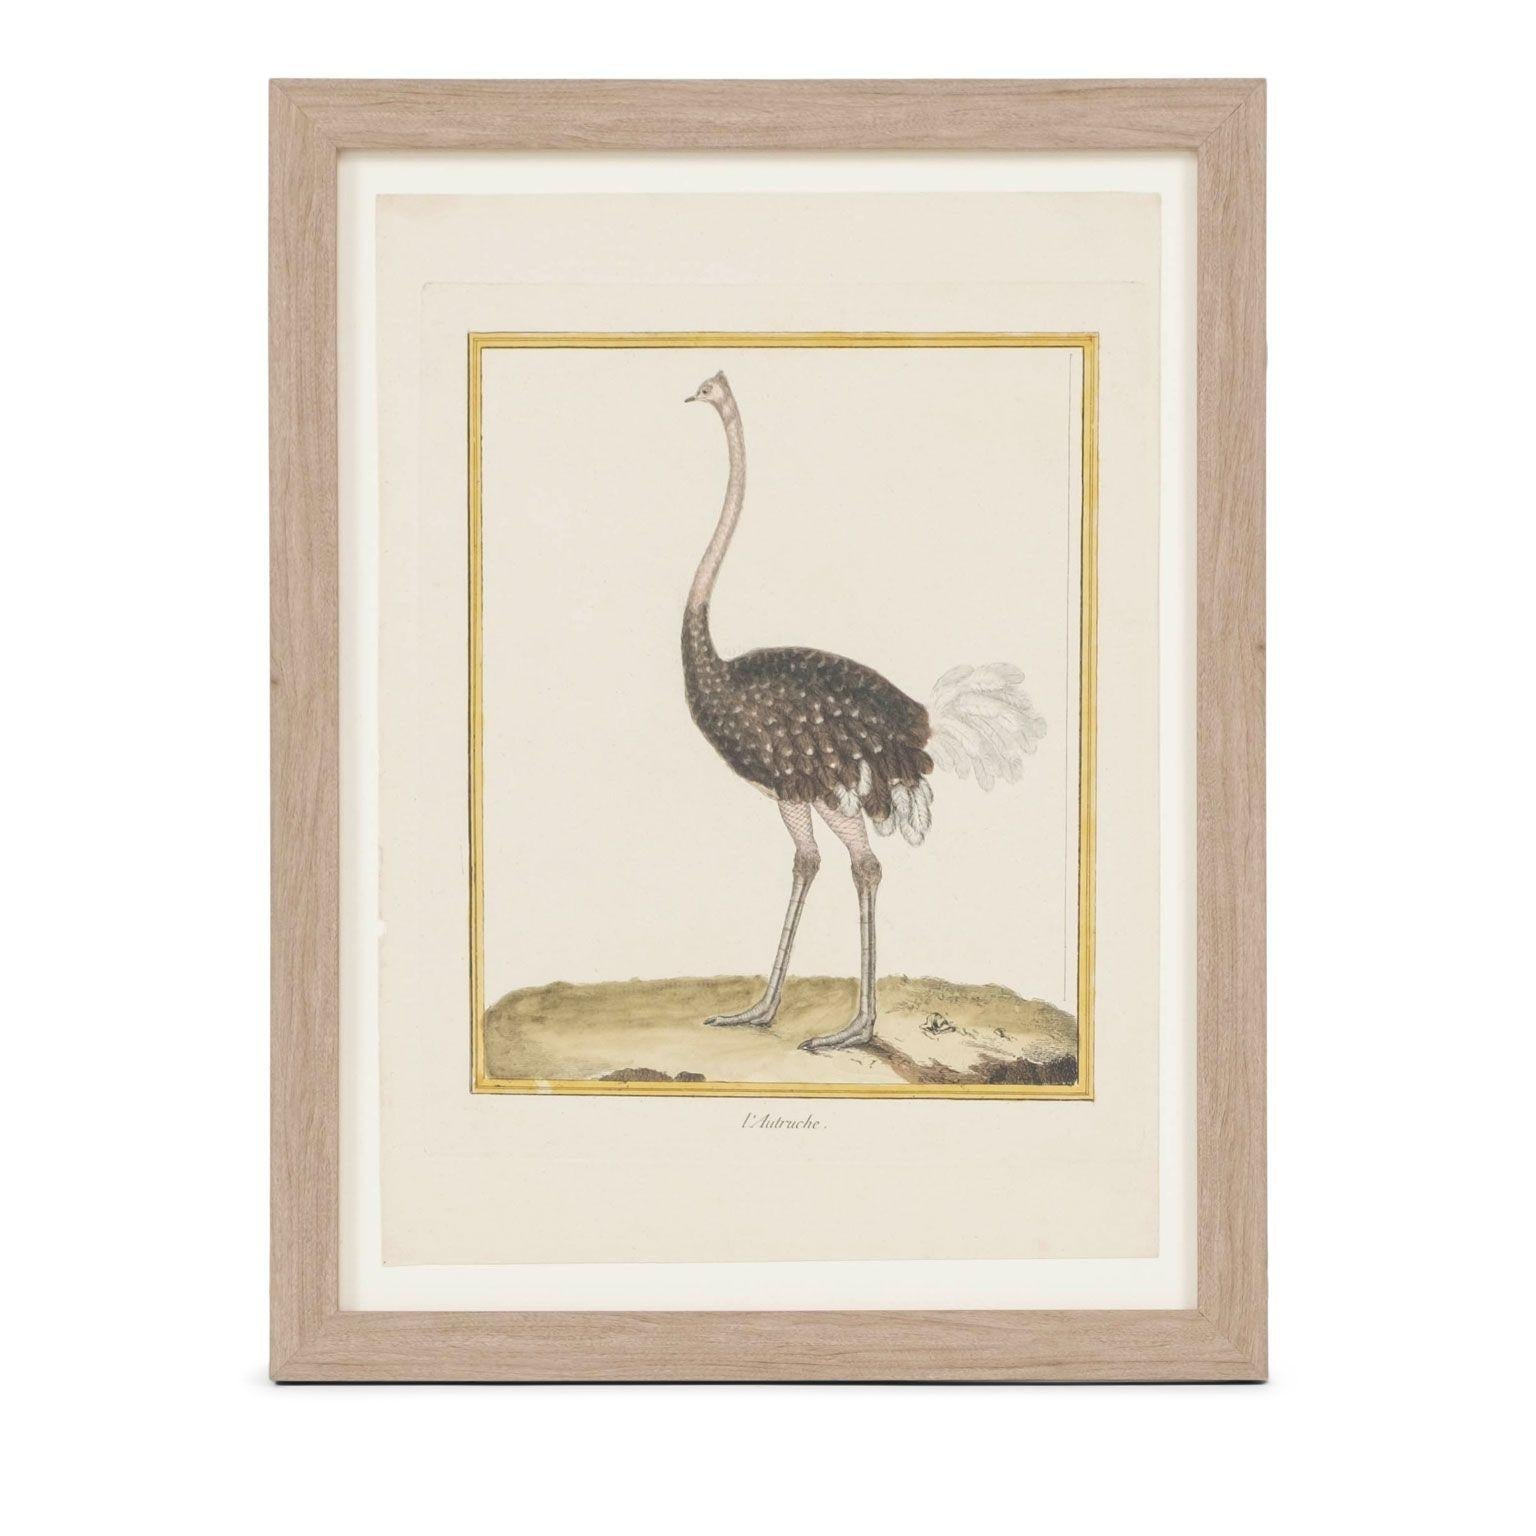 Sammlung von vier handkolorierten Vogelstichen von François Nicolas Martinet (1725-1804), die aus der zehnbändigen 